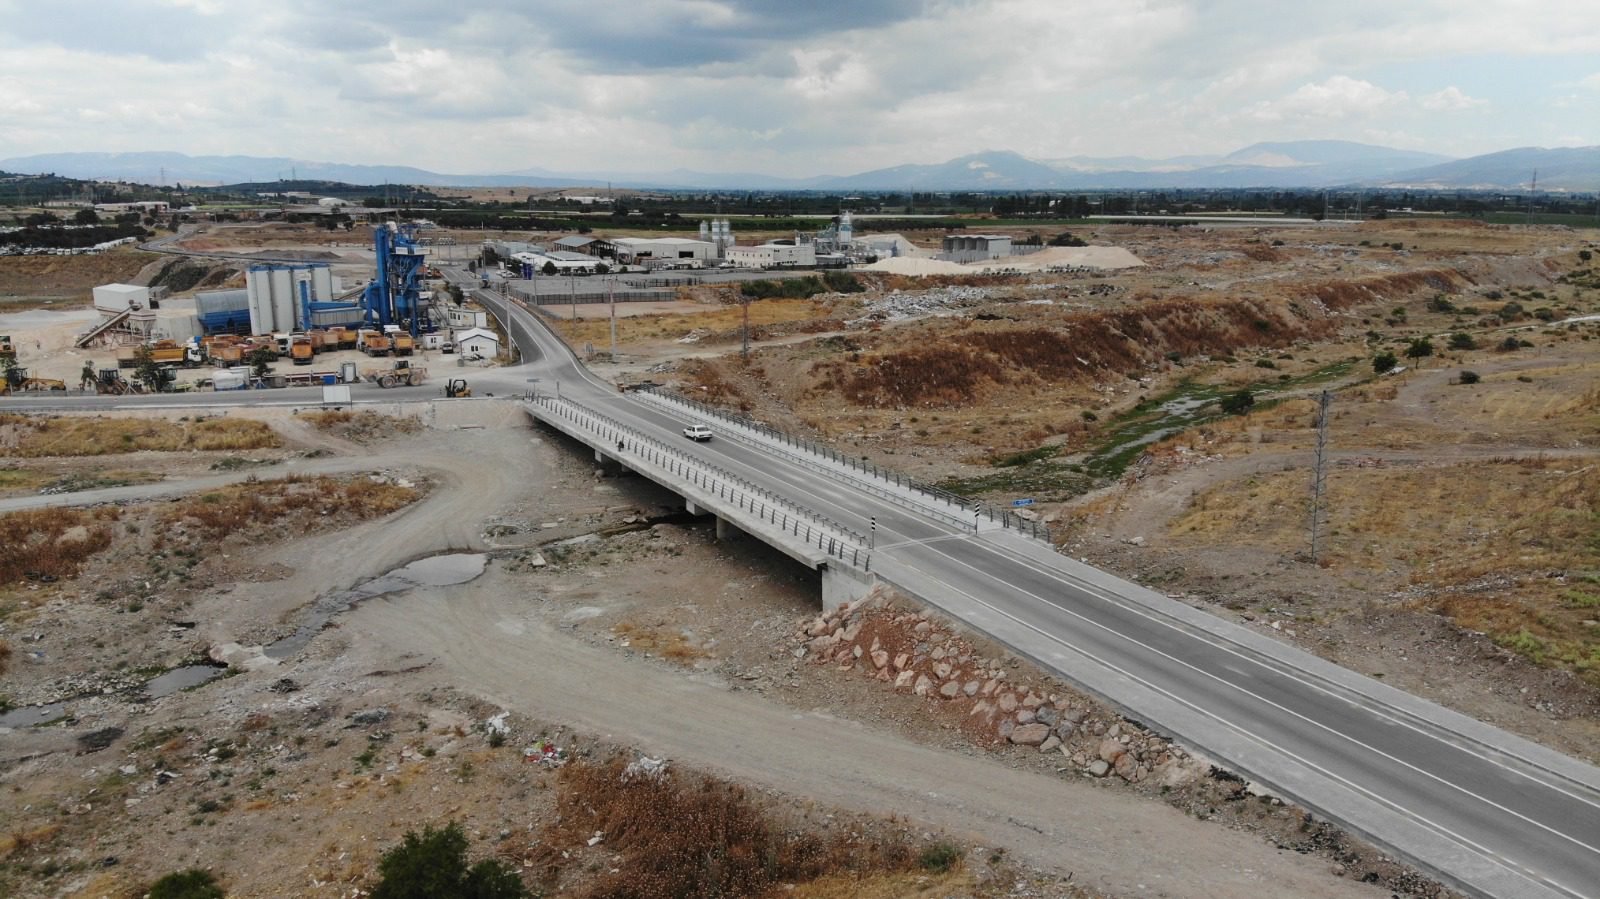 Büyükşehir Belediyesi’nden 12,5 milyon liralık yatırım Bergama’nın yeni köprüsü hazır